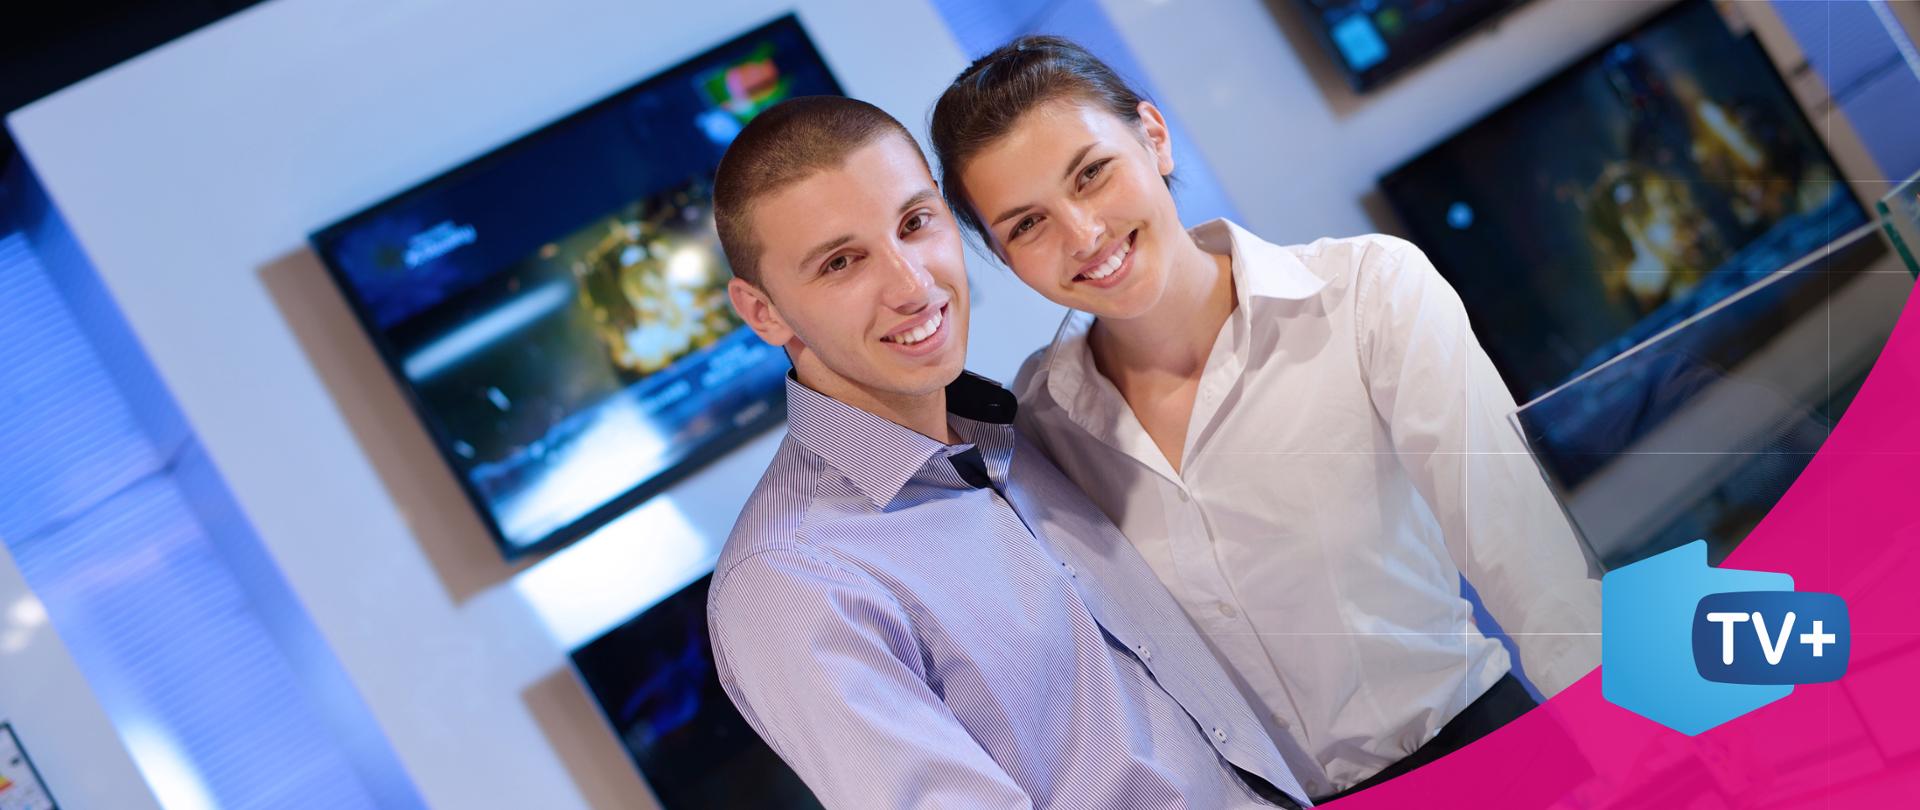 Zdjęcie przedstawiające młodych ludzi, kobietę i mężczyznę przed ekranem telewizora. 